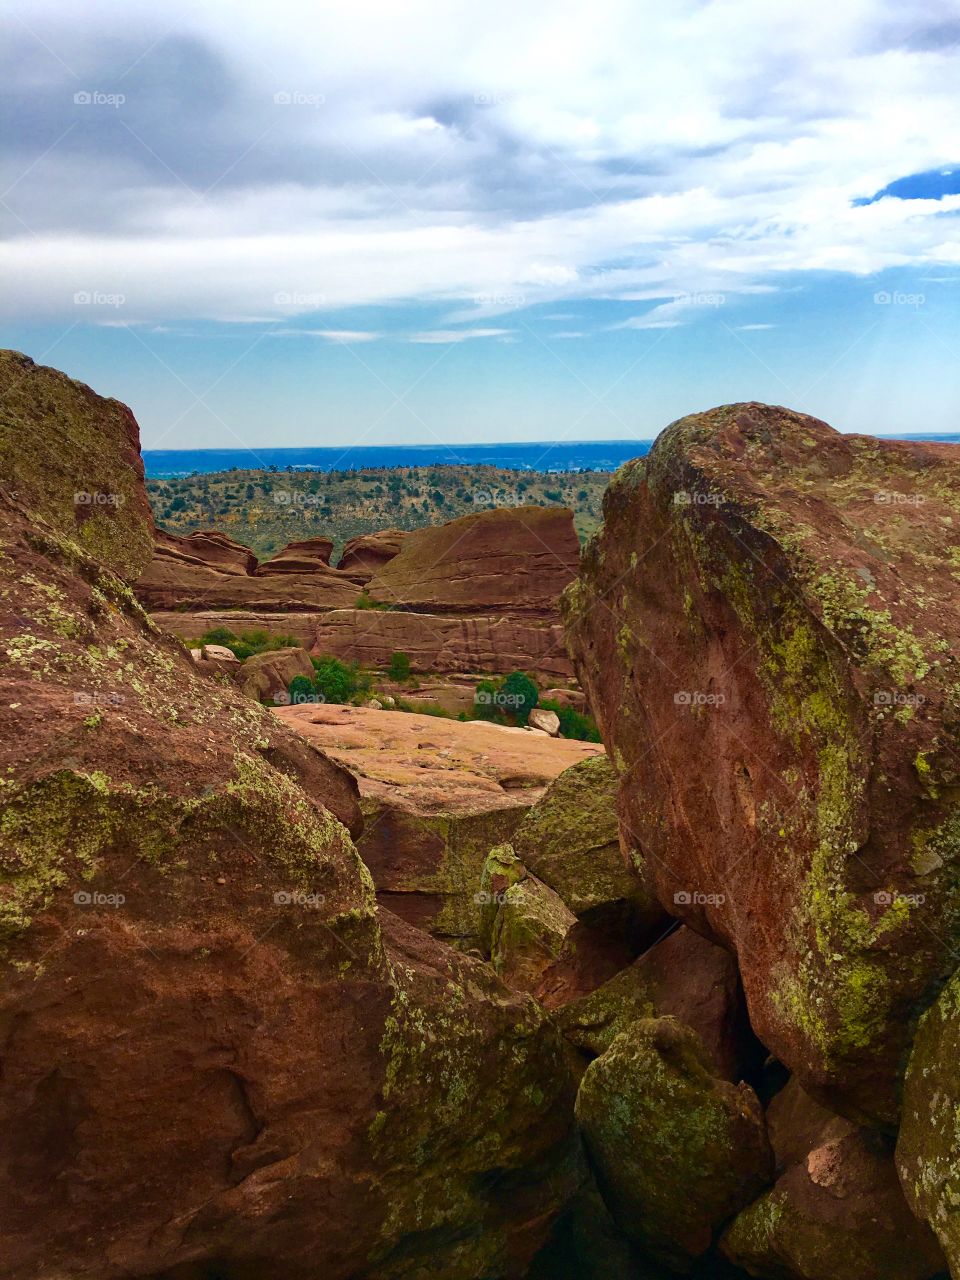 View of rocks, Colorado